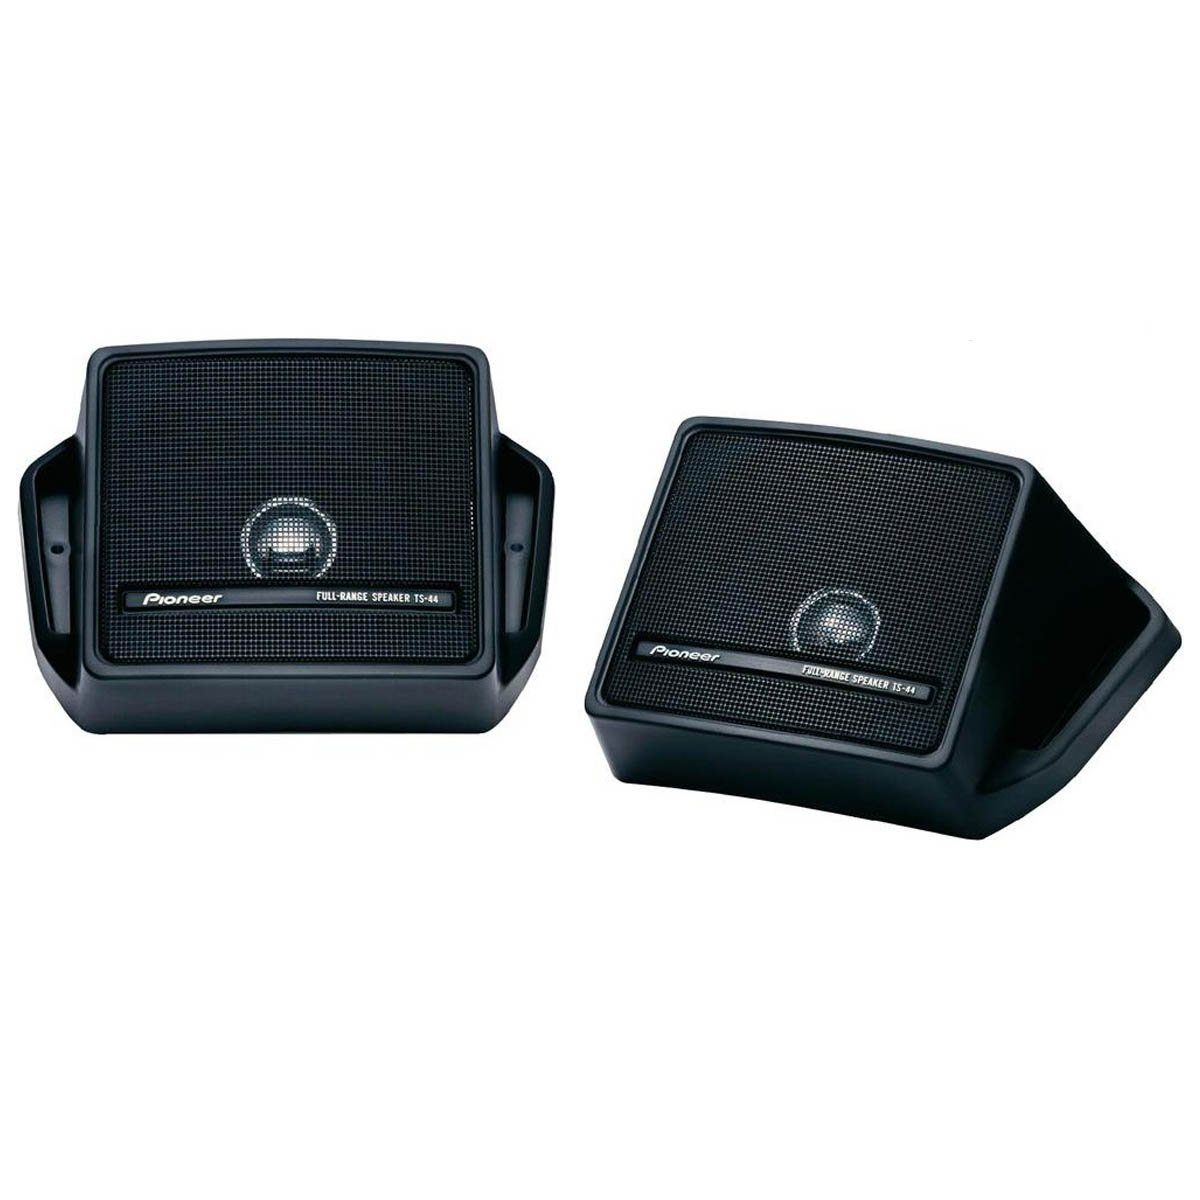 Paar Auto-Lautsprecher FullRange (Aufbaulautsprecher TS-44 Pioneer TS-44 Paar) Pioneer Lautsprecher Aufbaulautsprecher FullRange Lautsprecher Pioneer